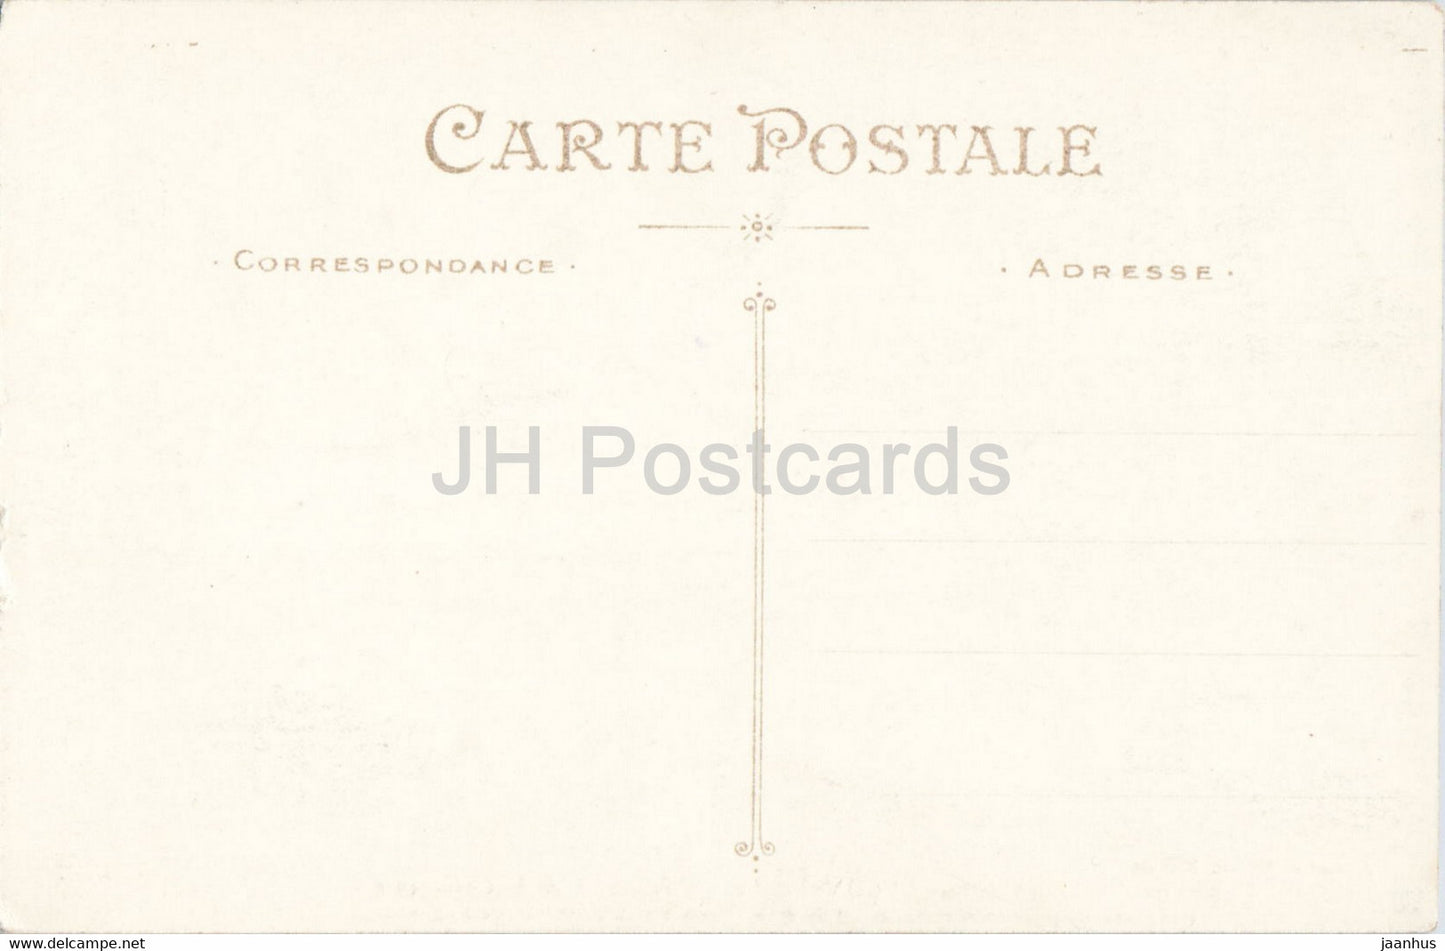 Lucon - Interieur de la Cathedrale - Un partie du flanc - cathedral - 30 - old postcard - France - unused